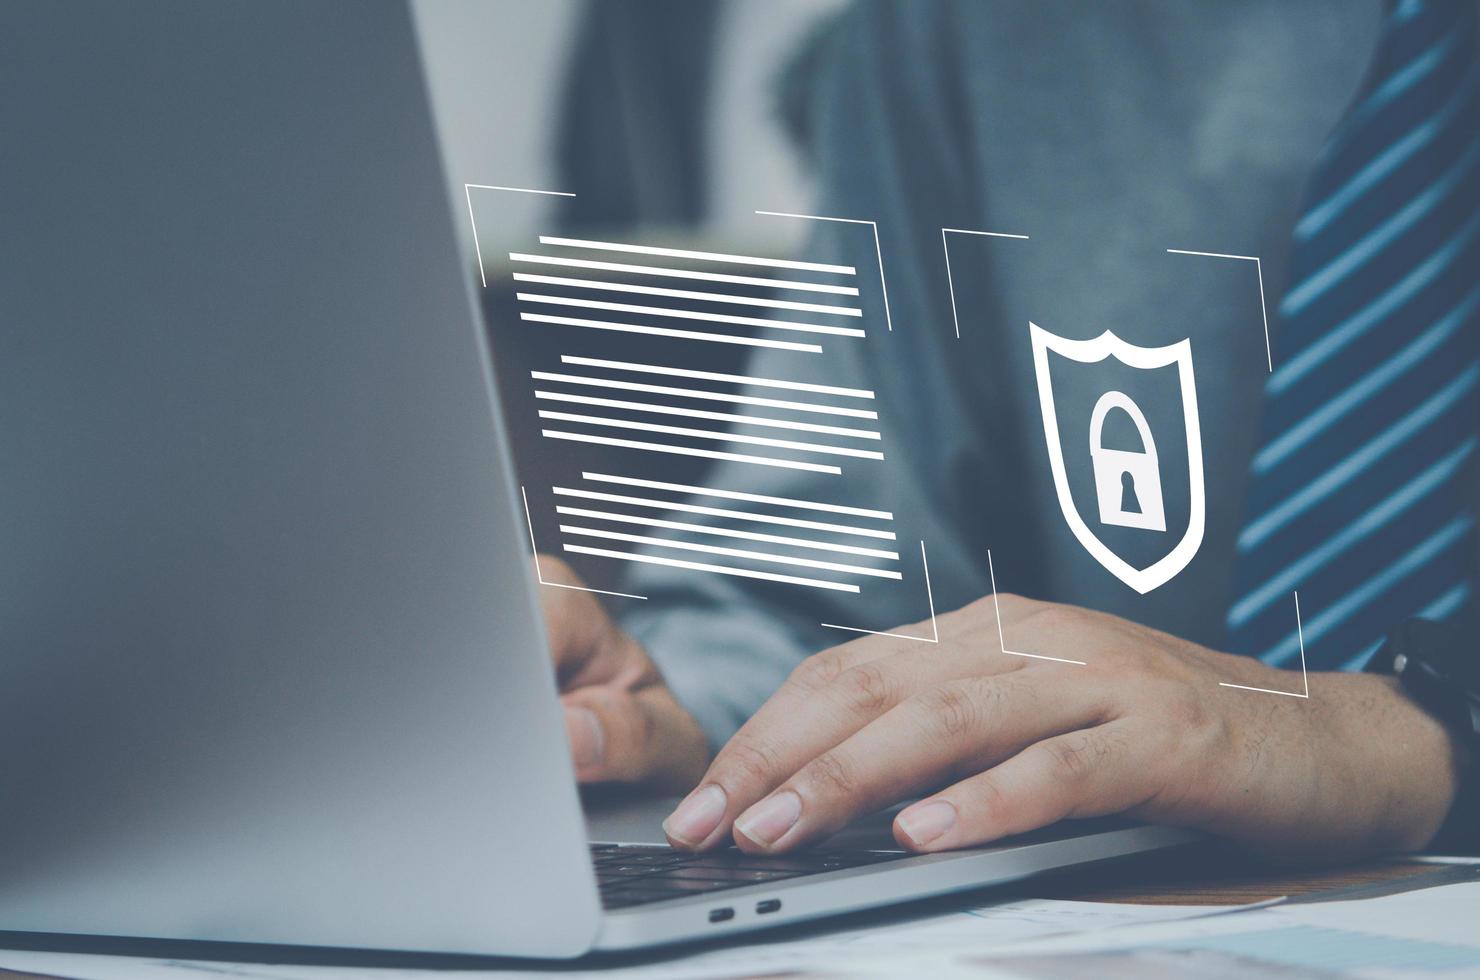 protégez votre ordinateur en utilisant un mot de passe pour empêcher le vol d'identité. concept d'entreprise d'information d'accès à la confidentialité de la technologie numérique cyber réseau internet. photo